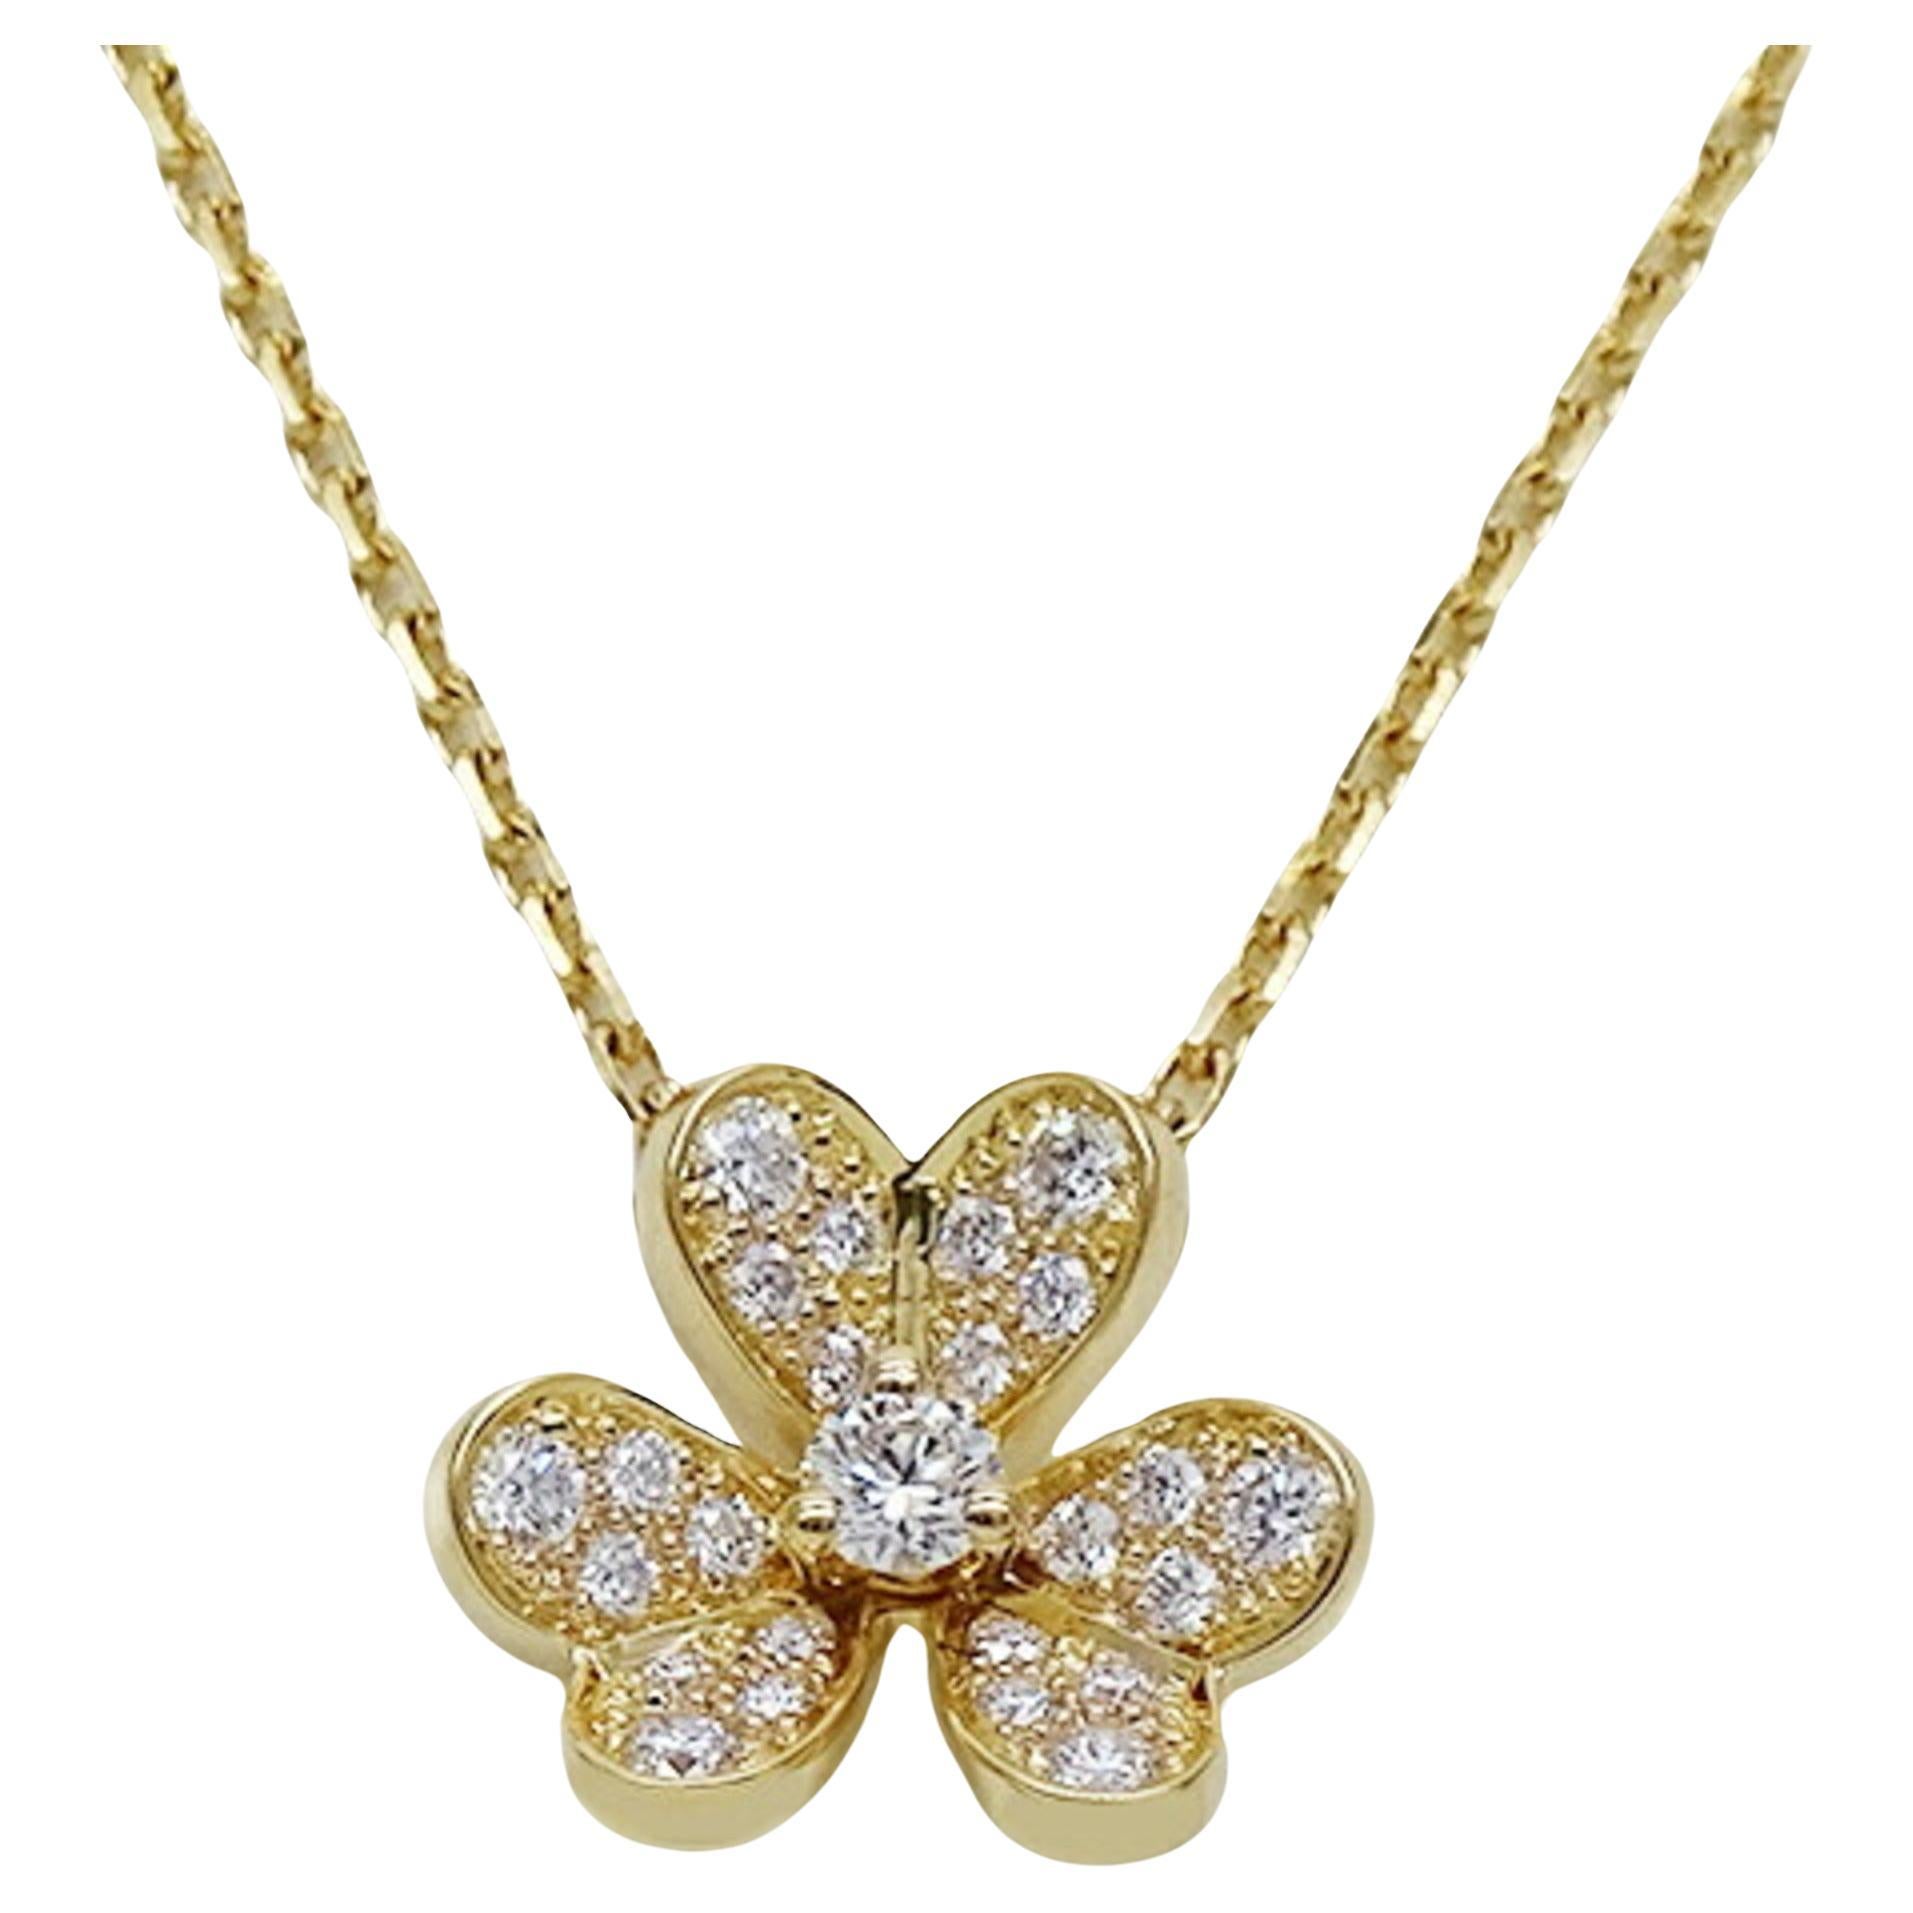 Van Cleef & Arpels Diamond Necklace in Yellow Gold